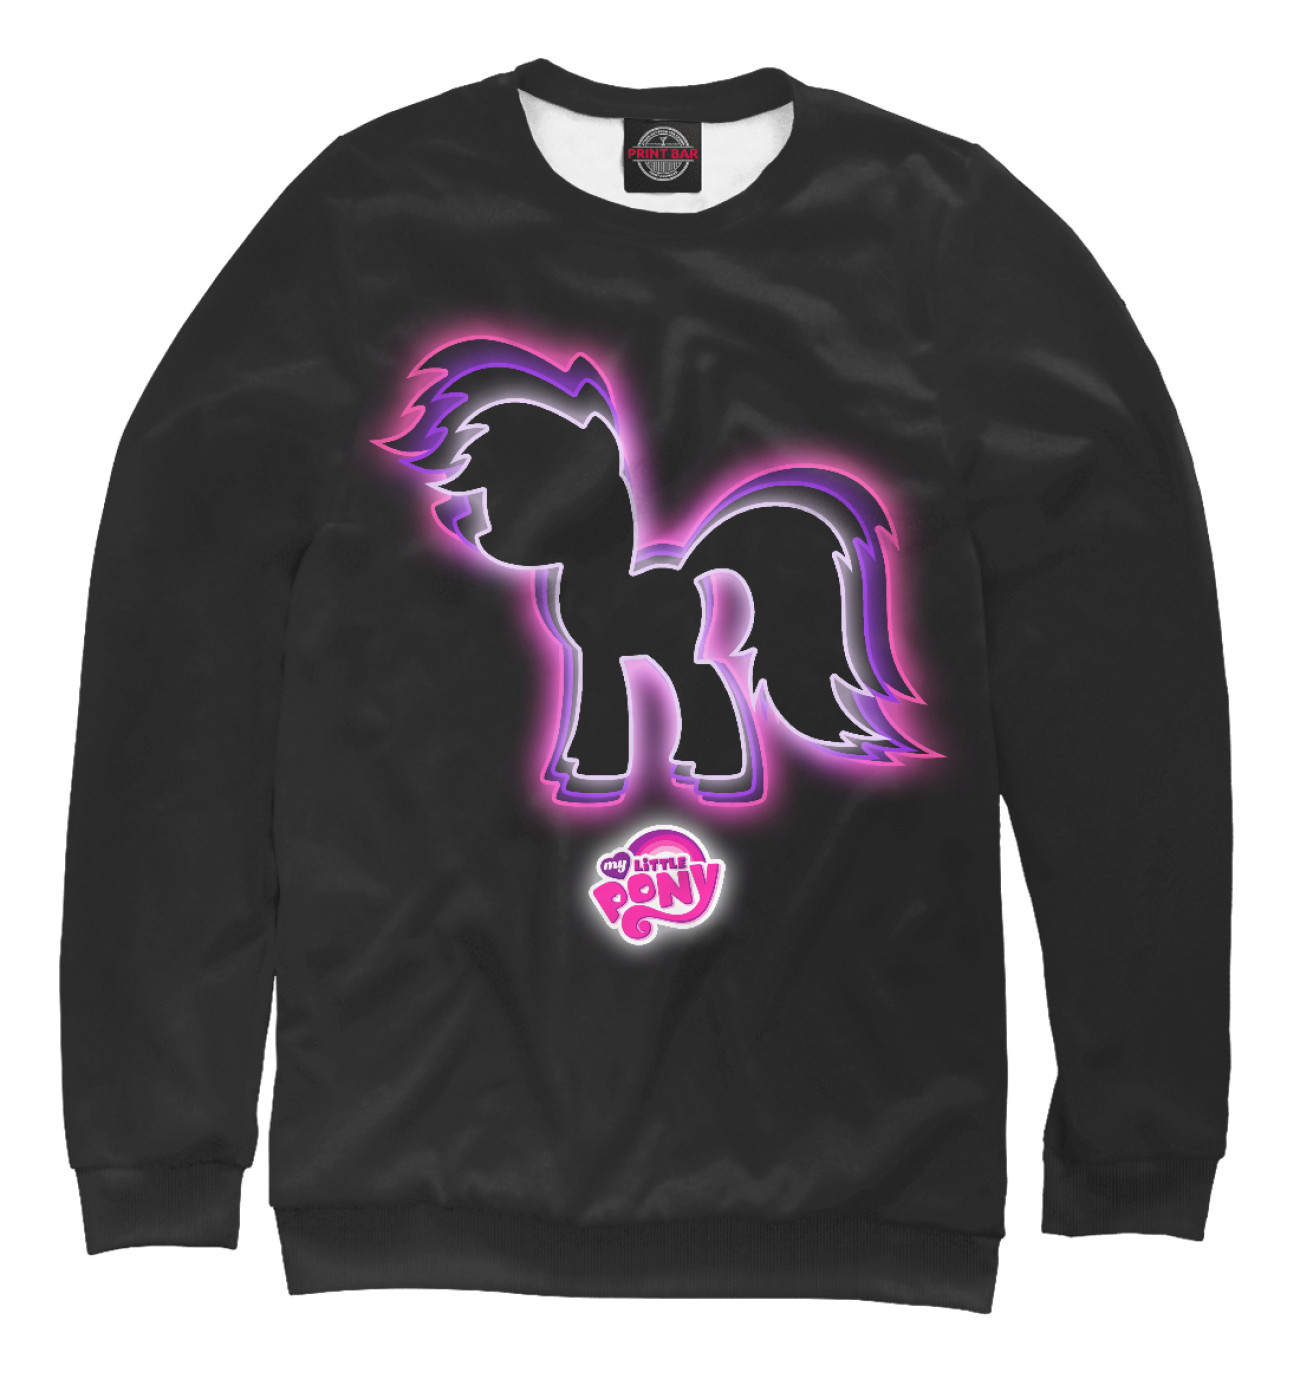 Женский Свитшот Pony, артикул: MLP-691899-swi-1